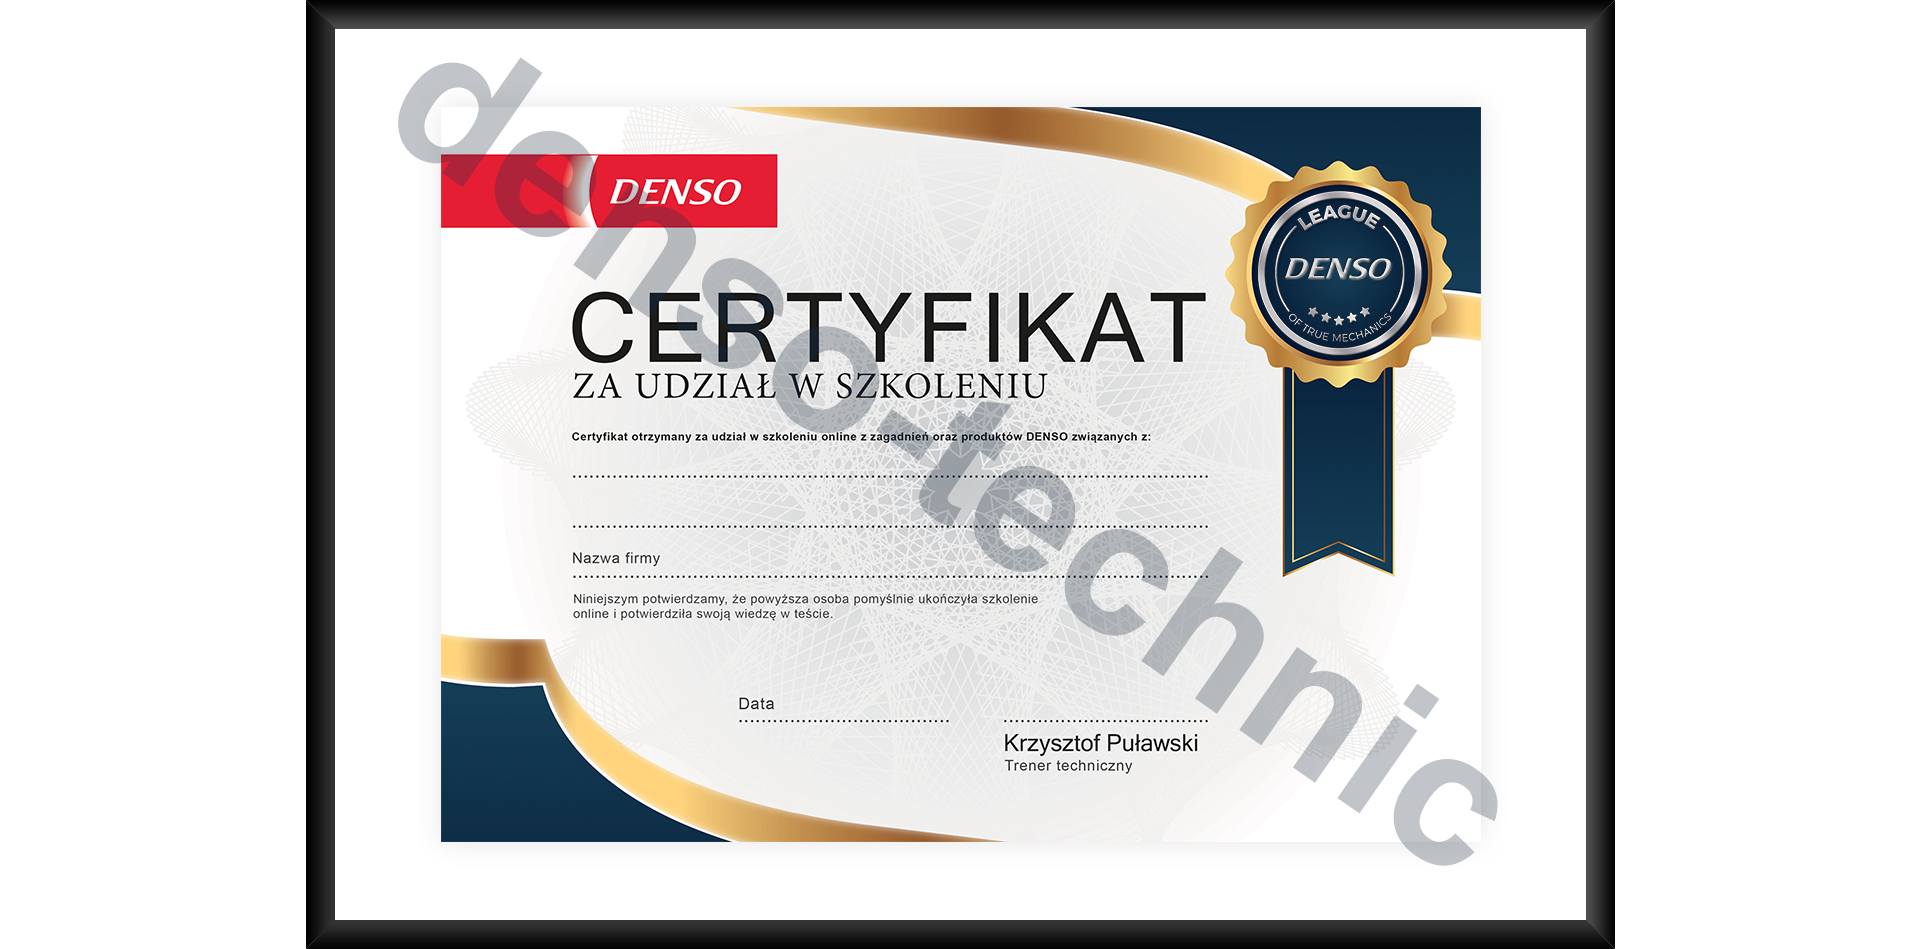 DENSO - Certyfikat